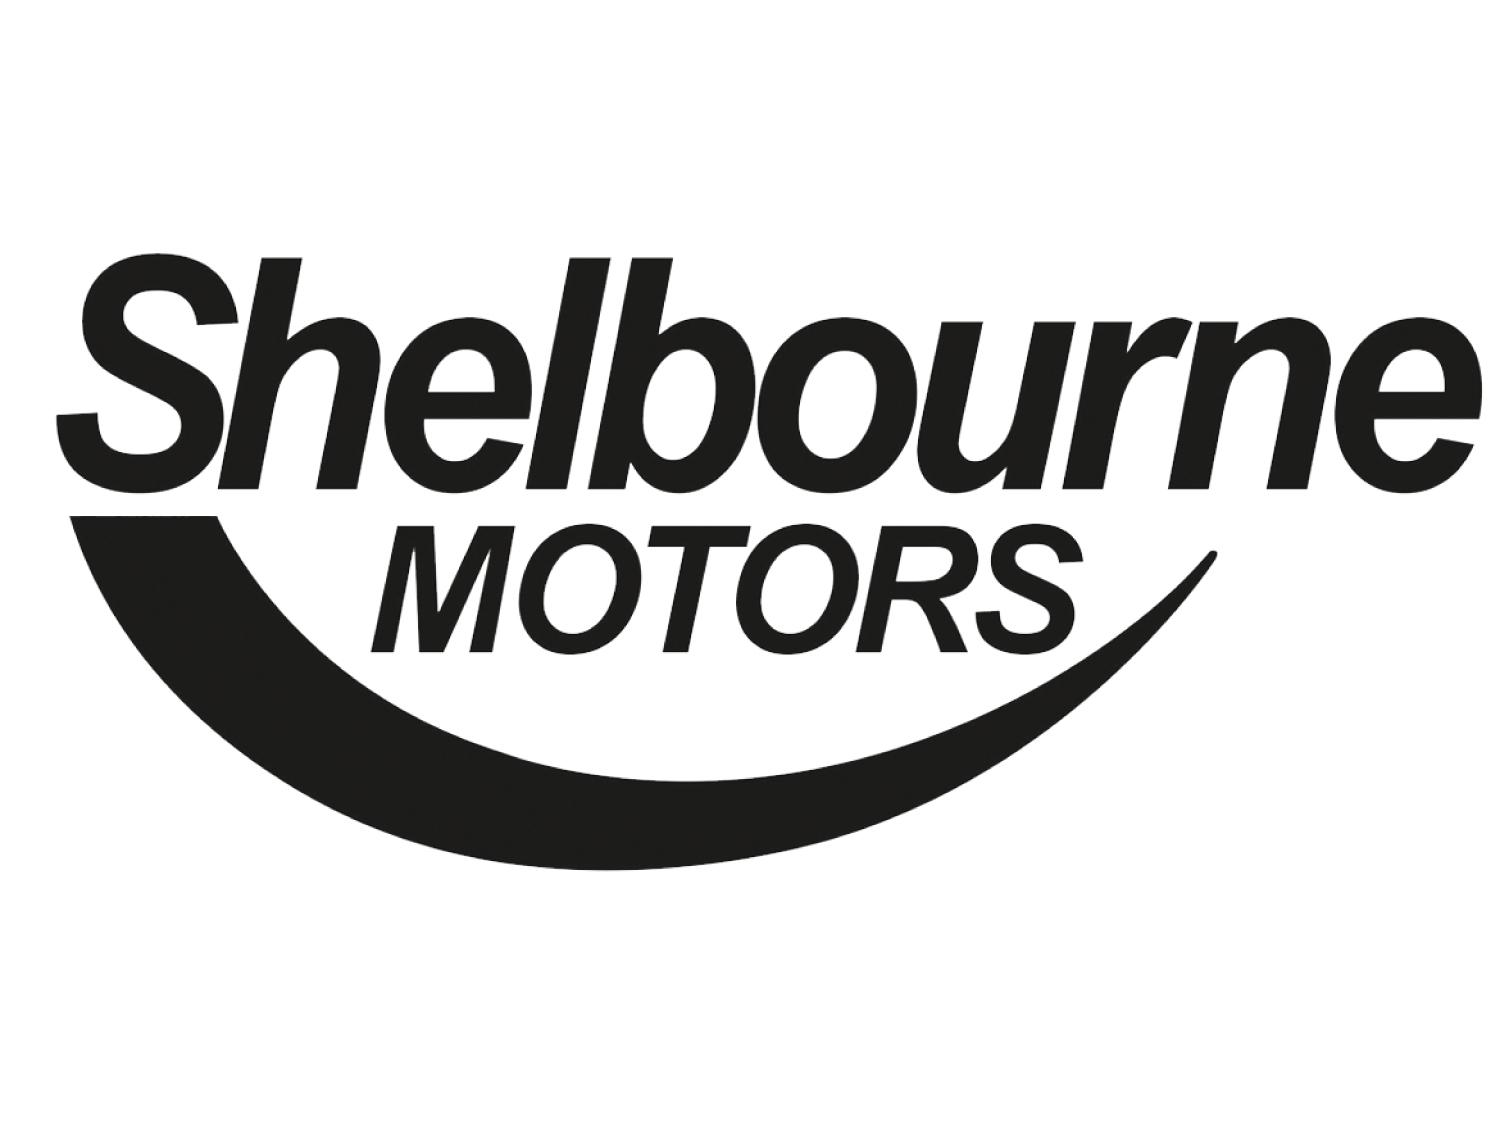 Shelbourne Motors Dacia Portadown Northern Ireland